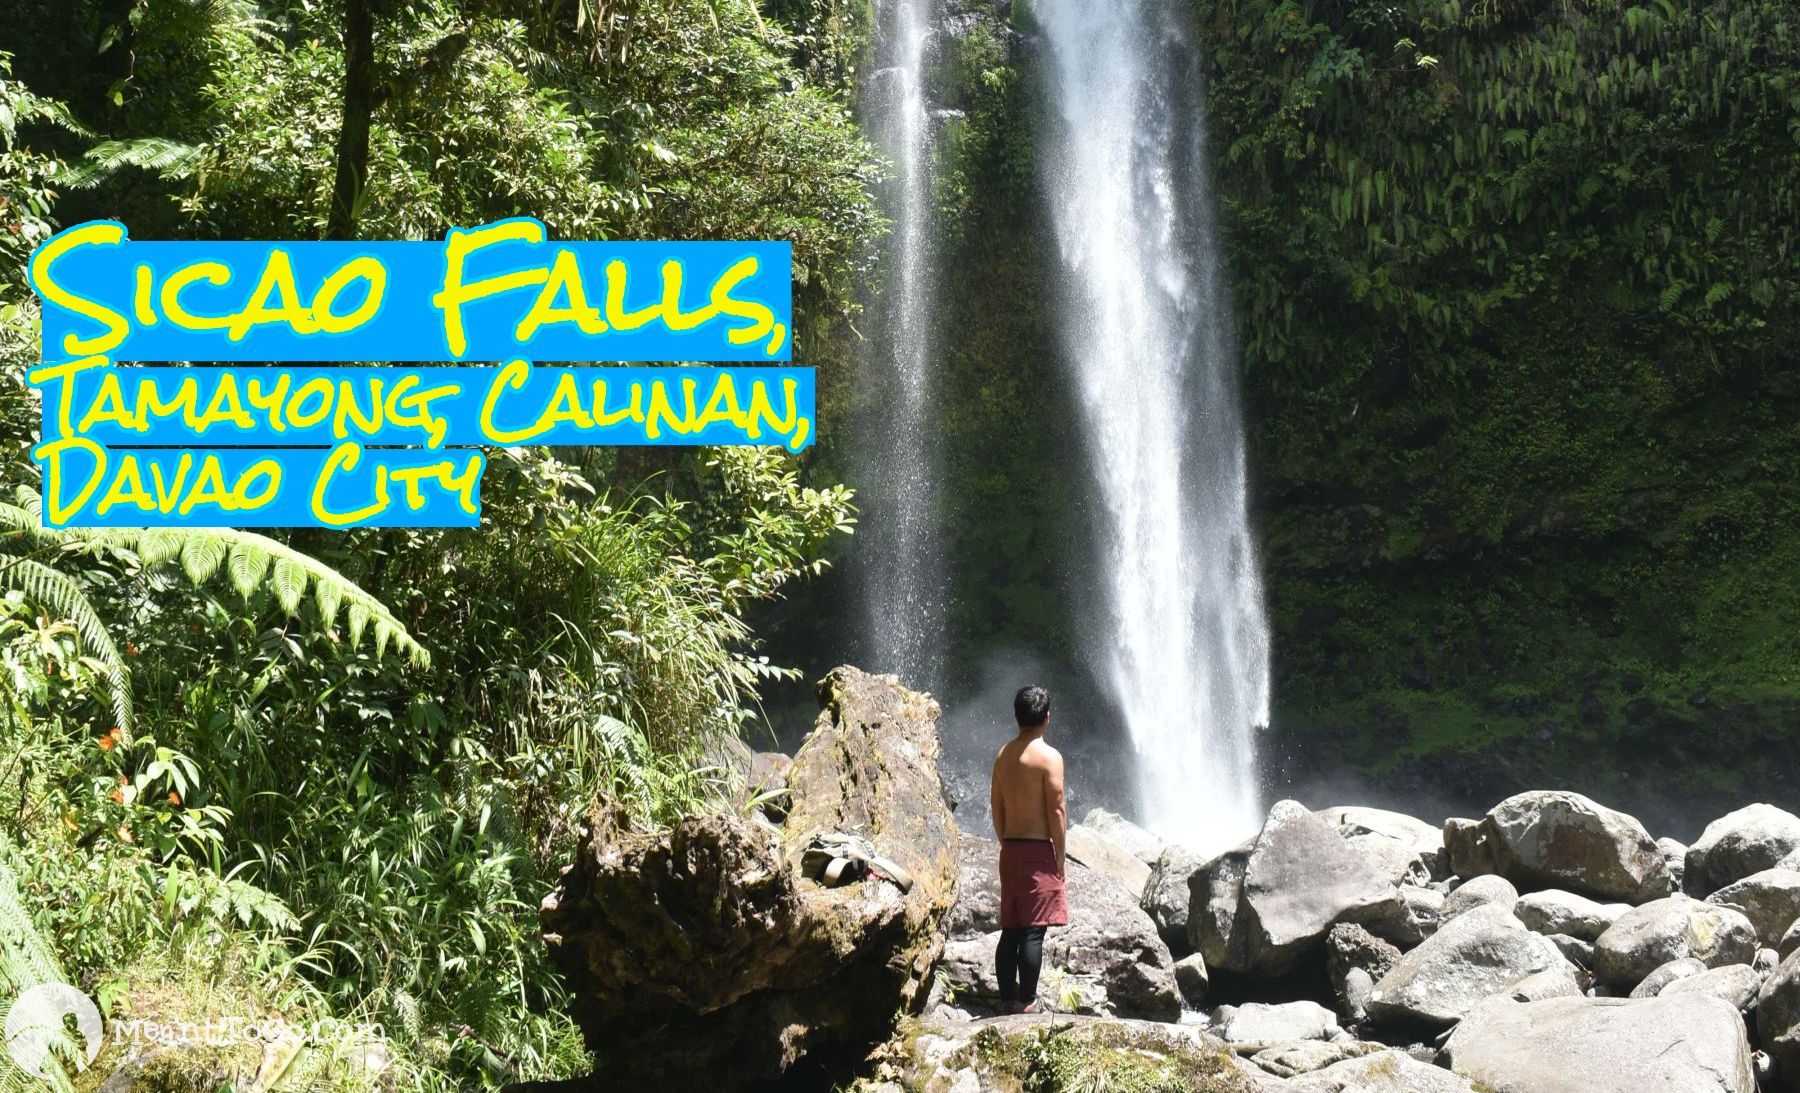 Sicao Falls, Tamayong, Calinan, Davao City